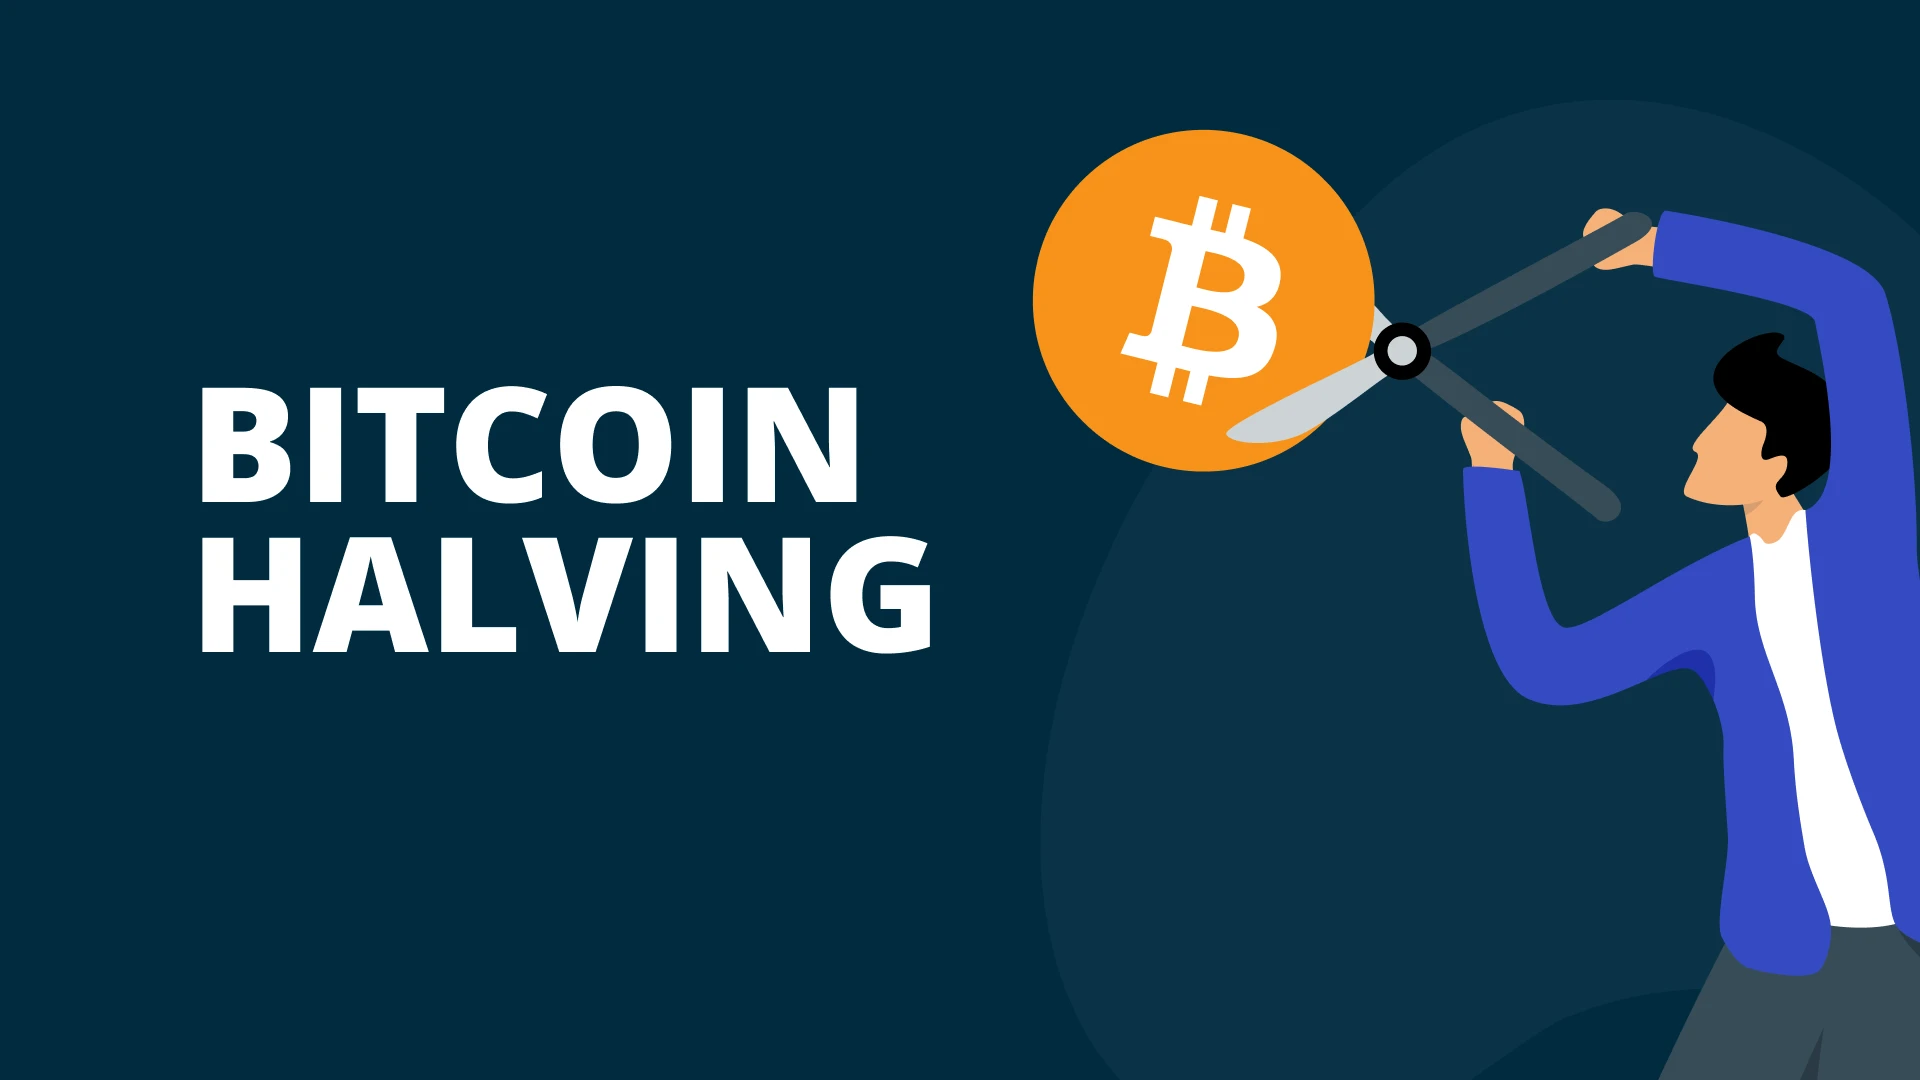 Upcoming Bitcoin Halving